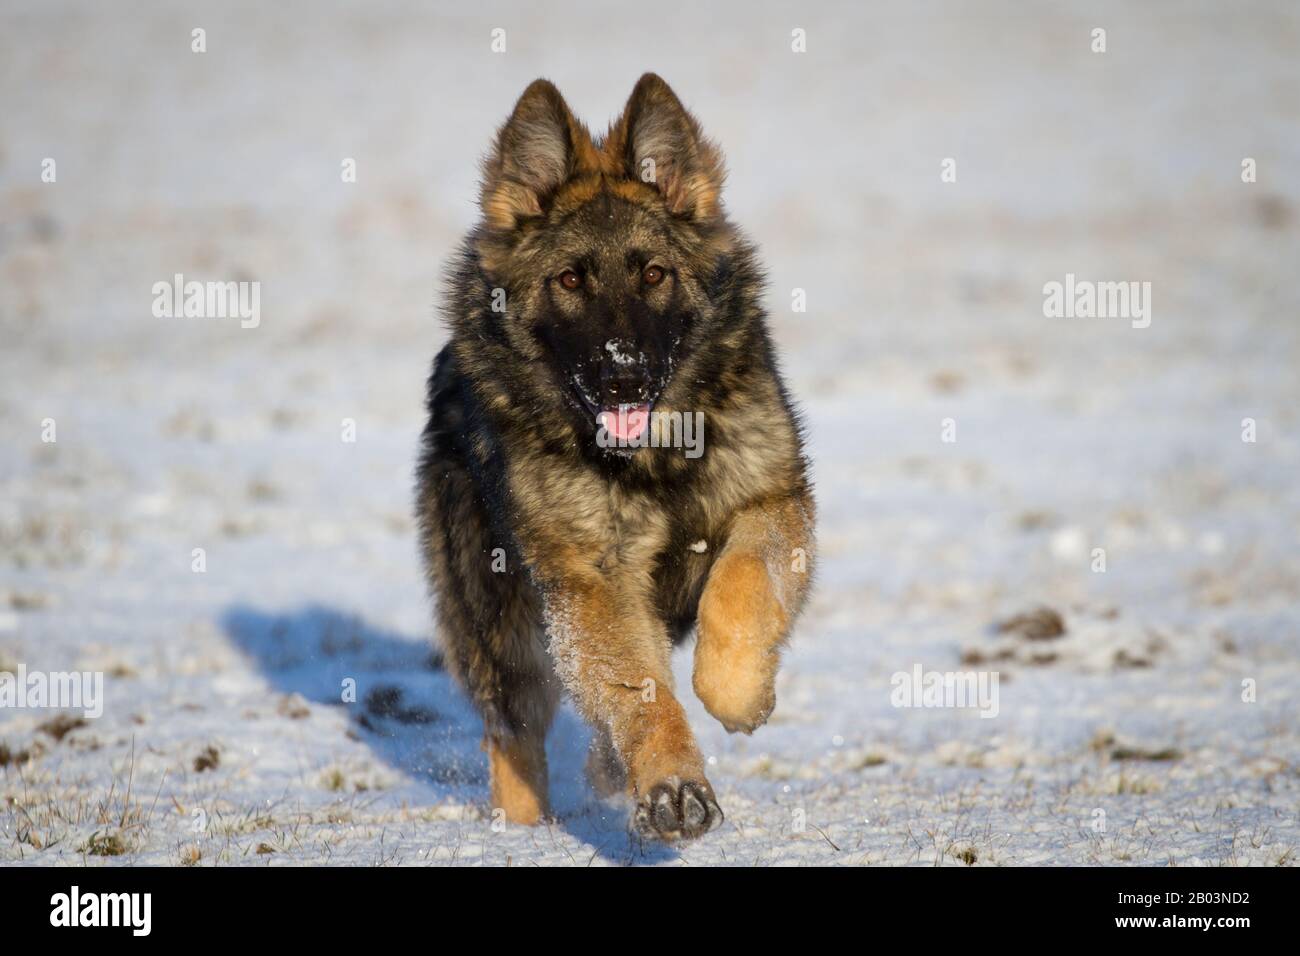 Perro pastor alemán de pelo largo (perro alsaciano) corriendo en la nieve Foto de stock